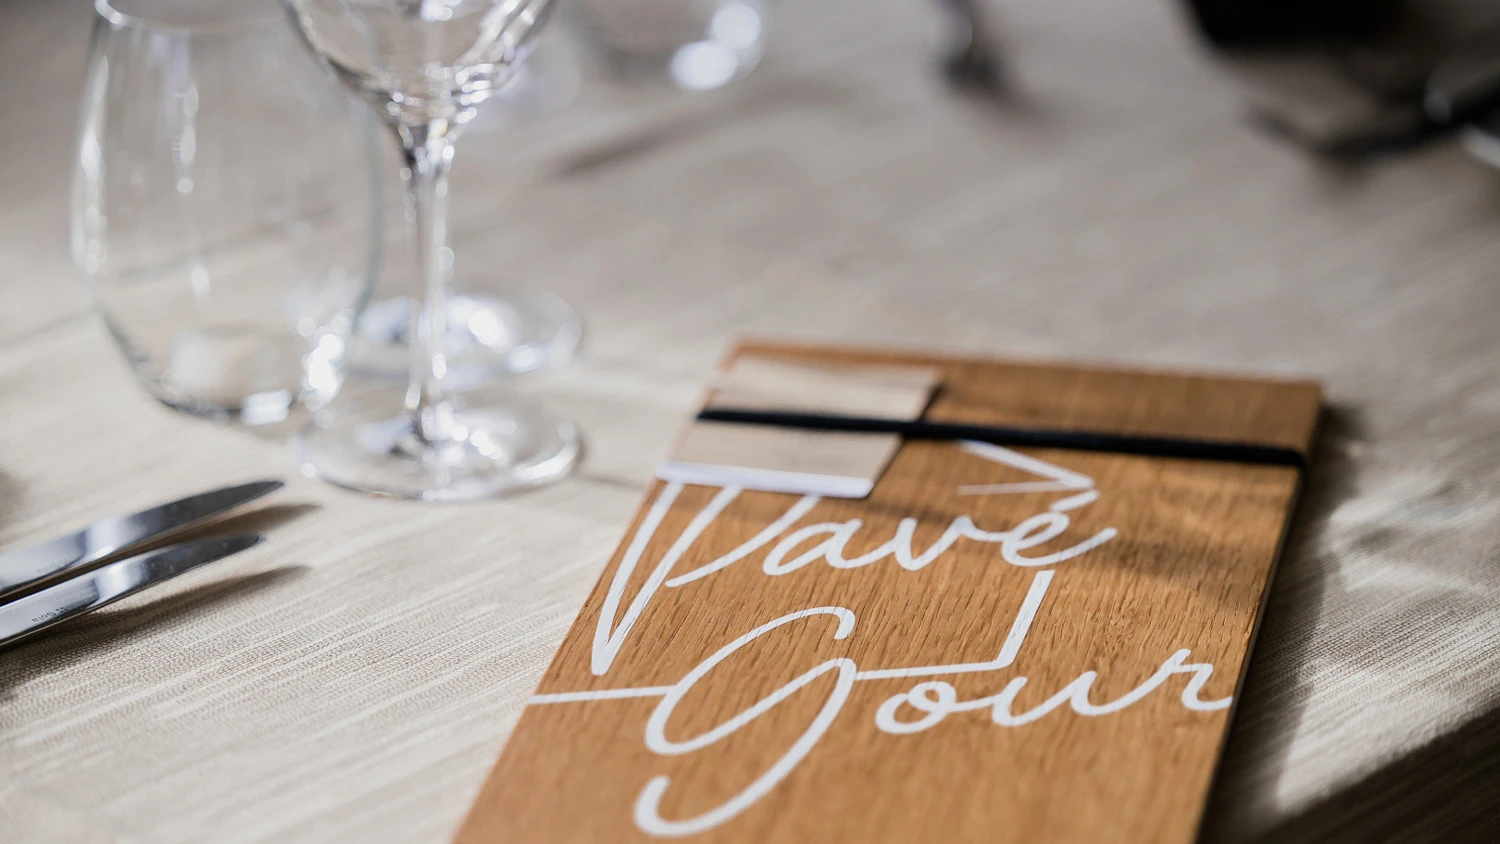 Schön gedeckter Restauranttisch mit dem Logo des Restaurants Le Pavé Gourmand.